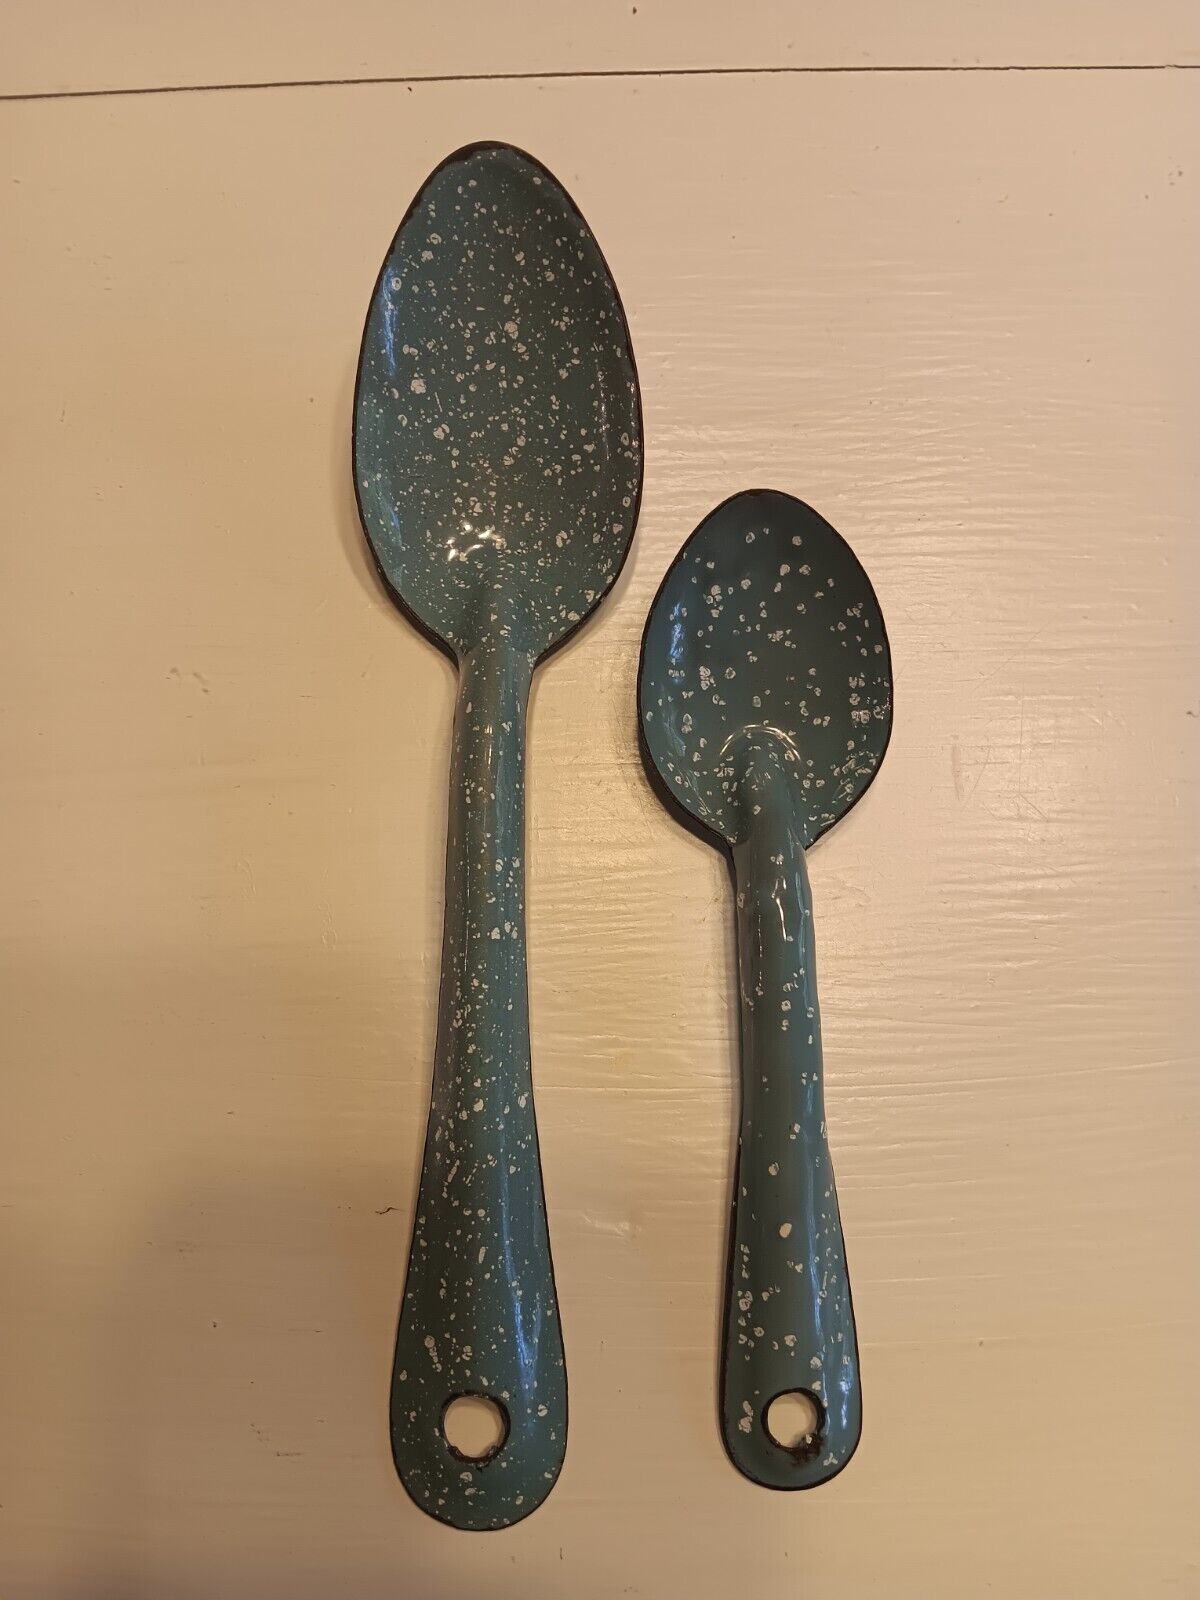 2 Vintage Robin Egg Blue Speckled Enamelware Spoons